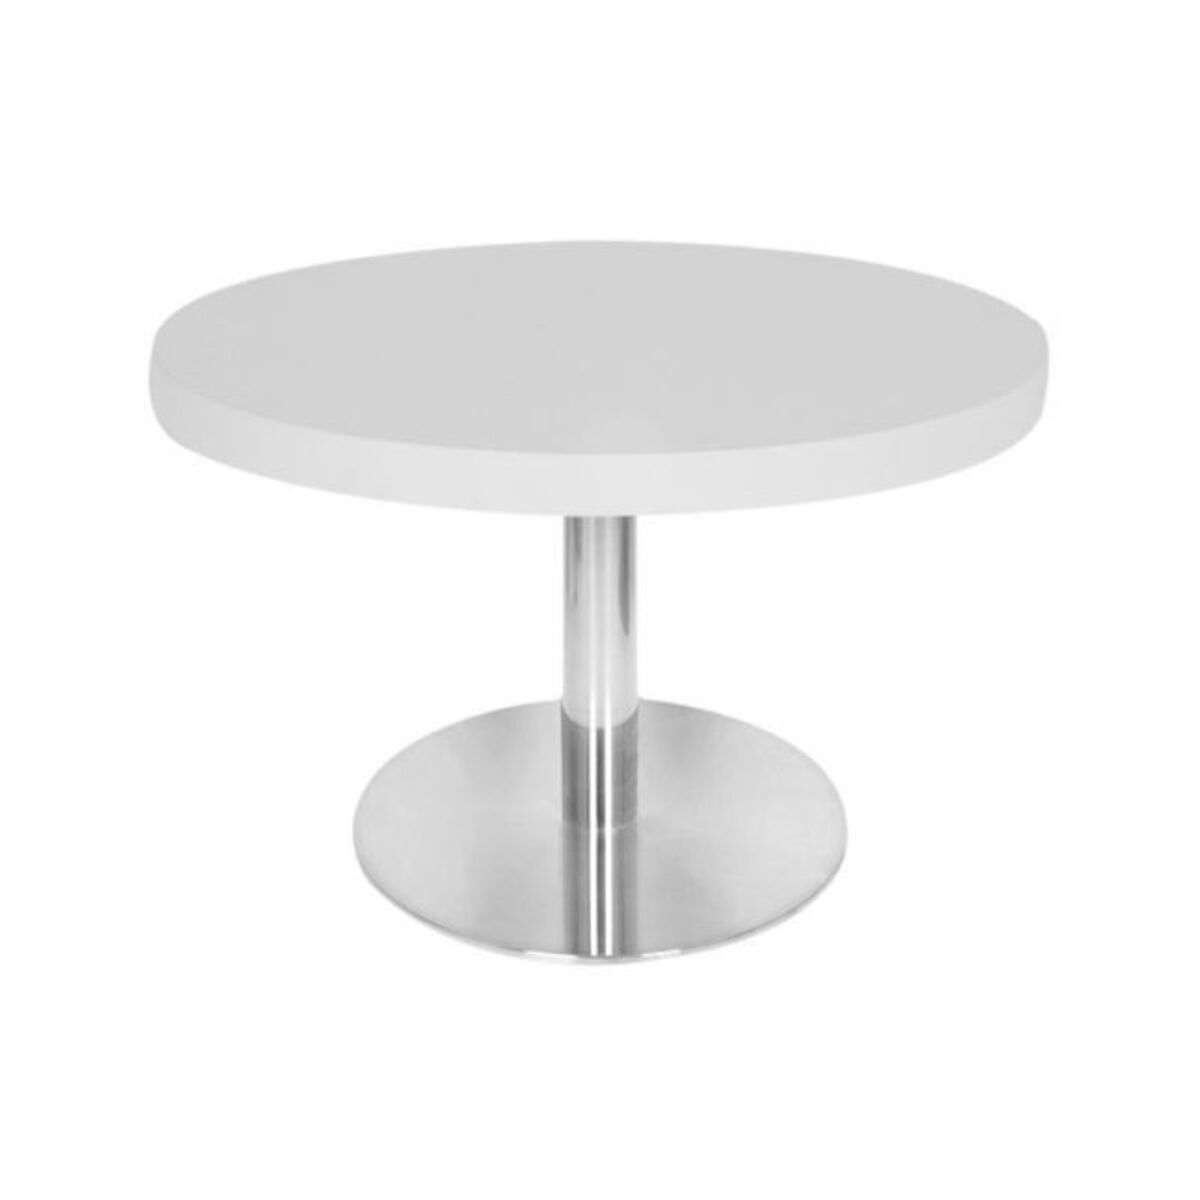 Table basse avec plateau de table rond diamètre 60 cm blanc et pied inox h.48 cm